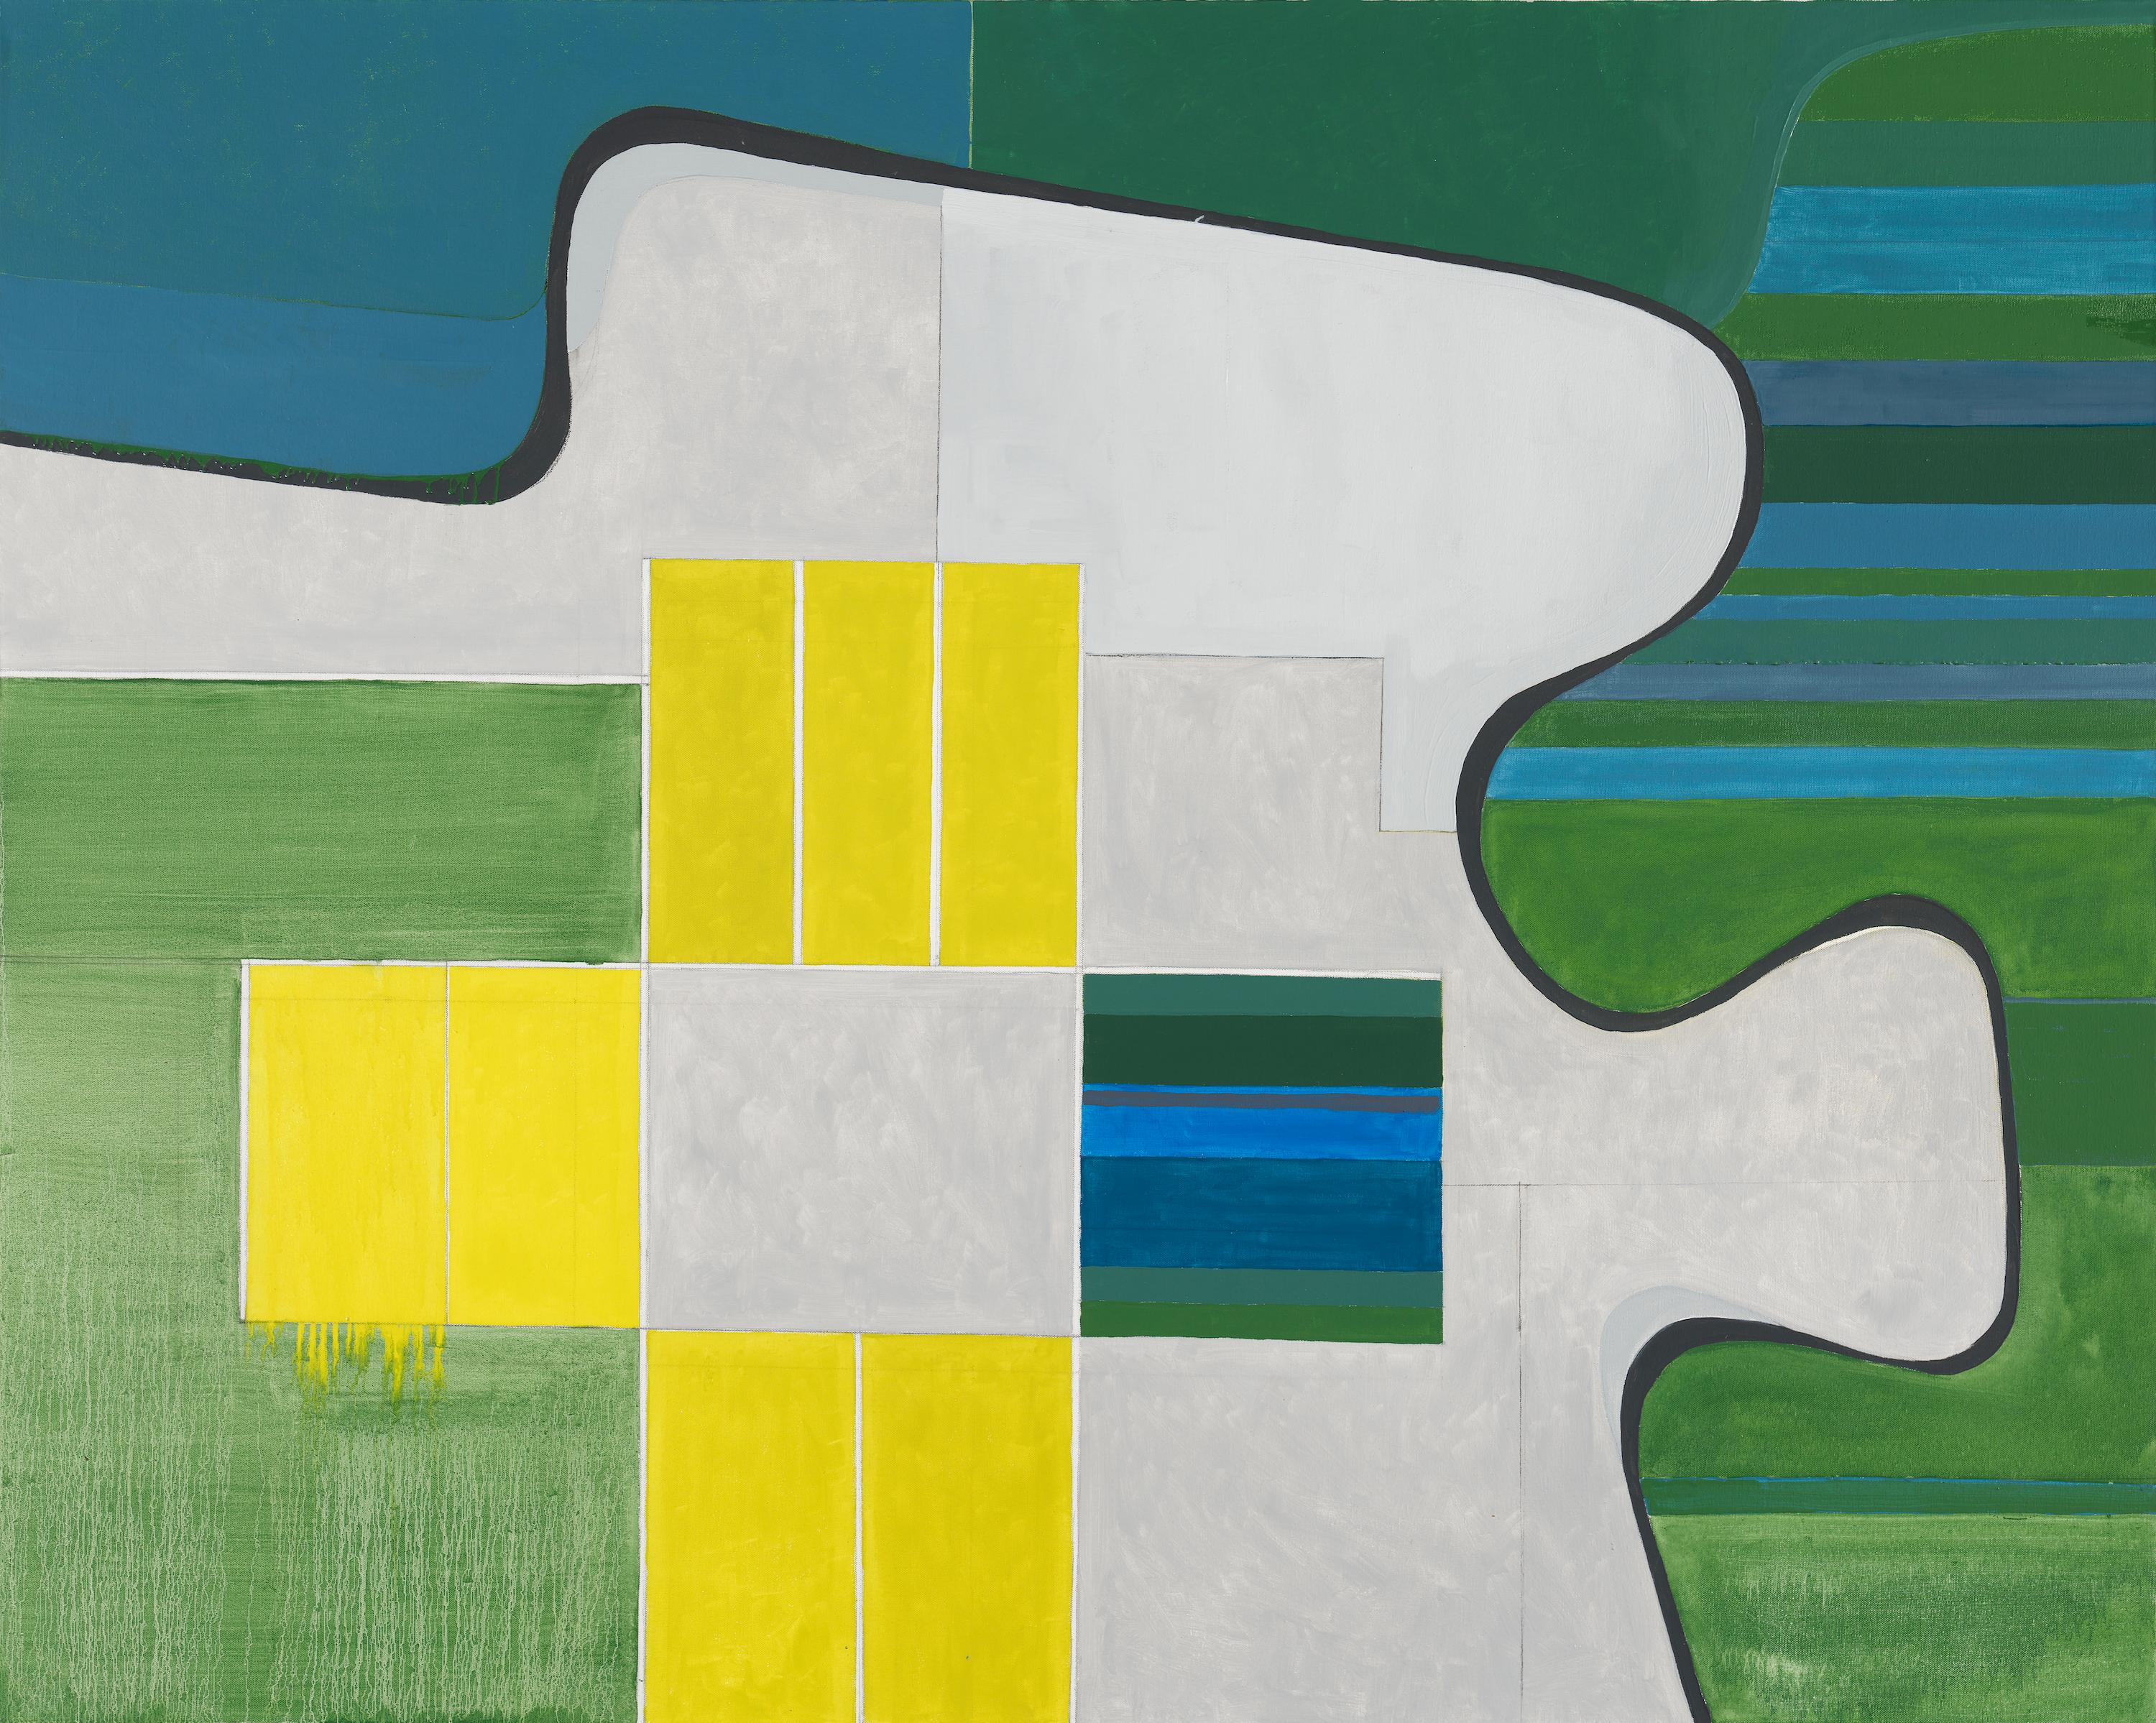 Paysage n° 4 / géométrie abstraite, architecture, terre de ferme, 10,16 x 12,7 cm